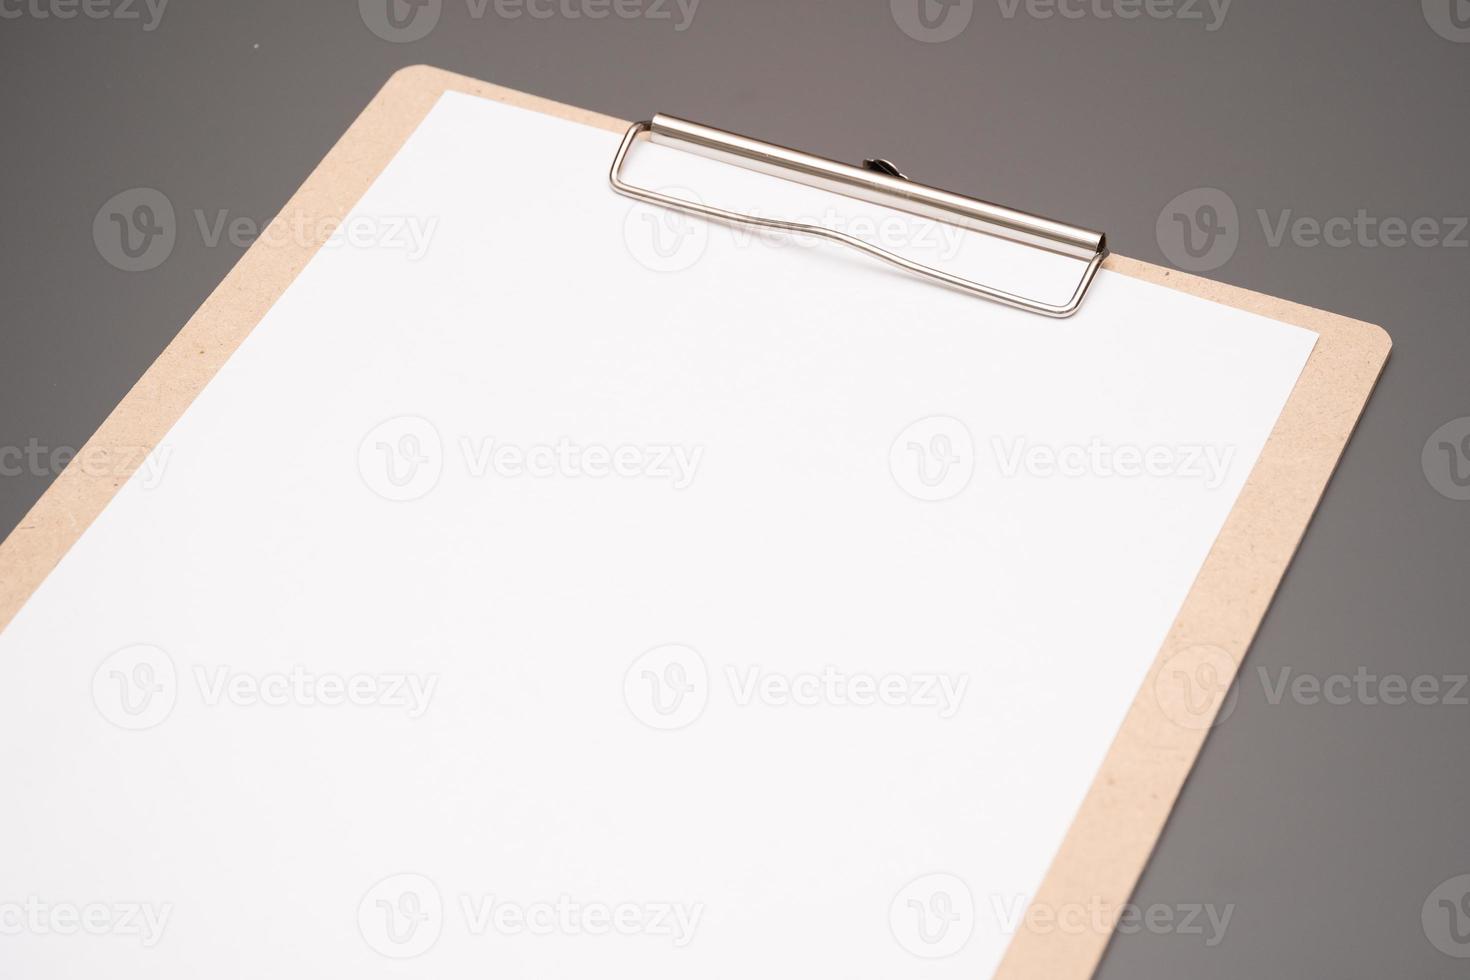 foco seletivo. uma prancheta com uma folha de papel branca foto